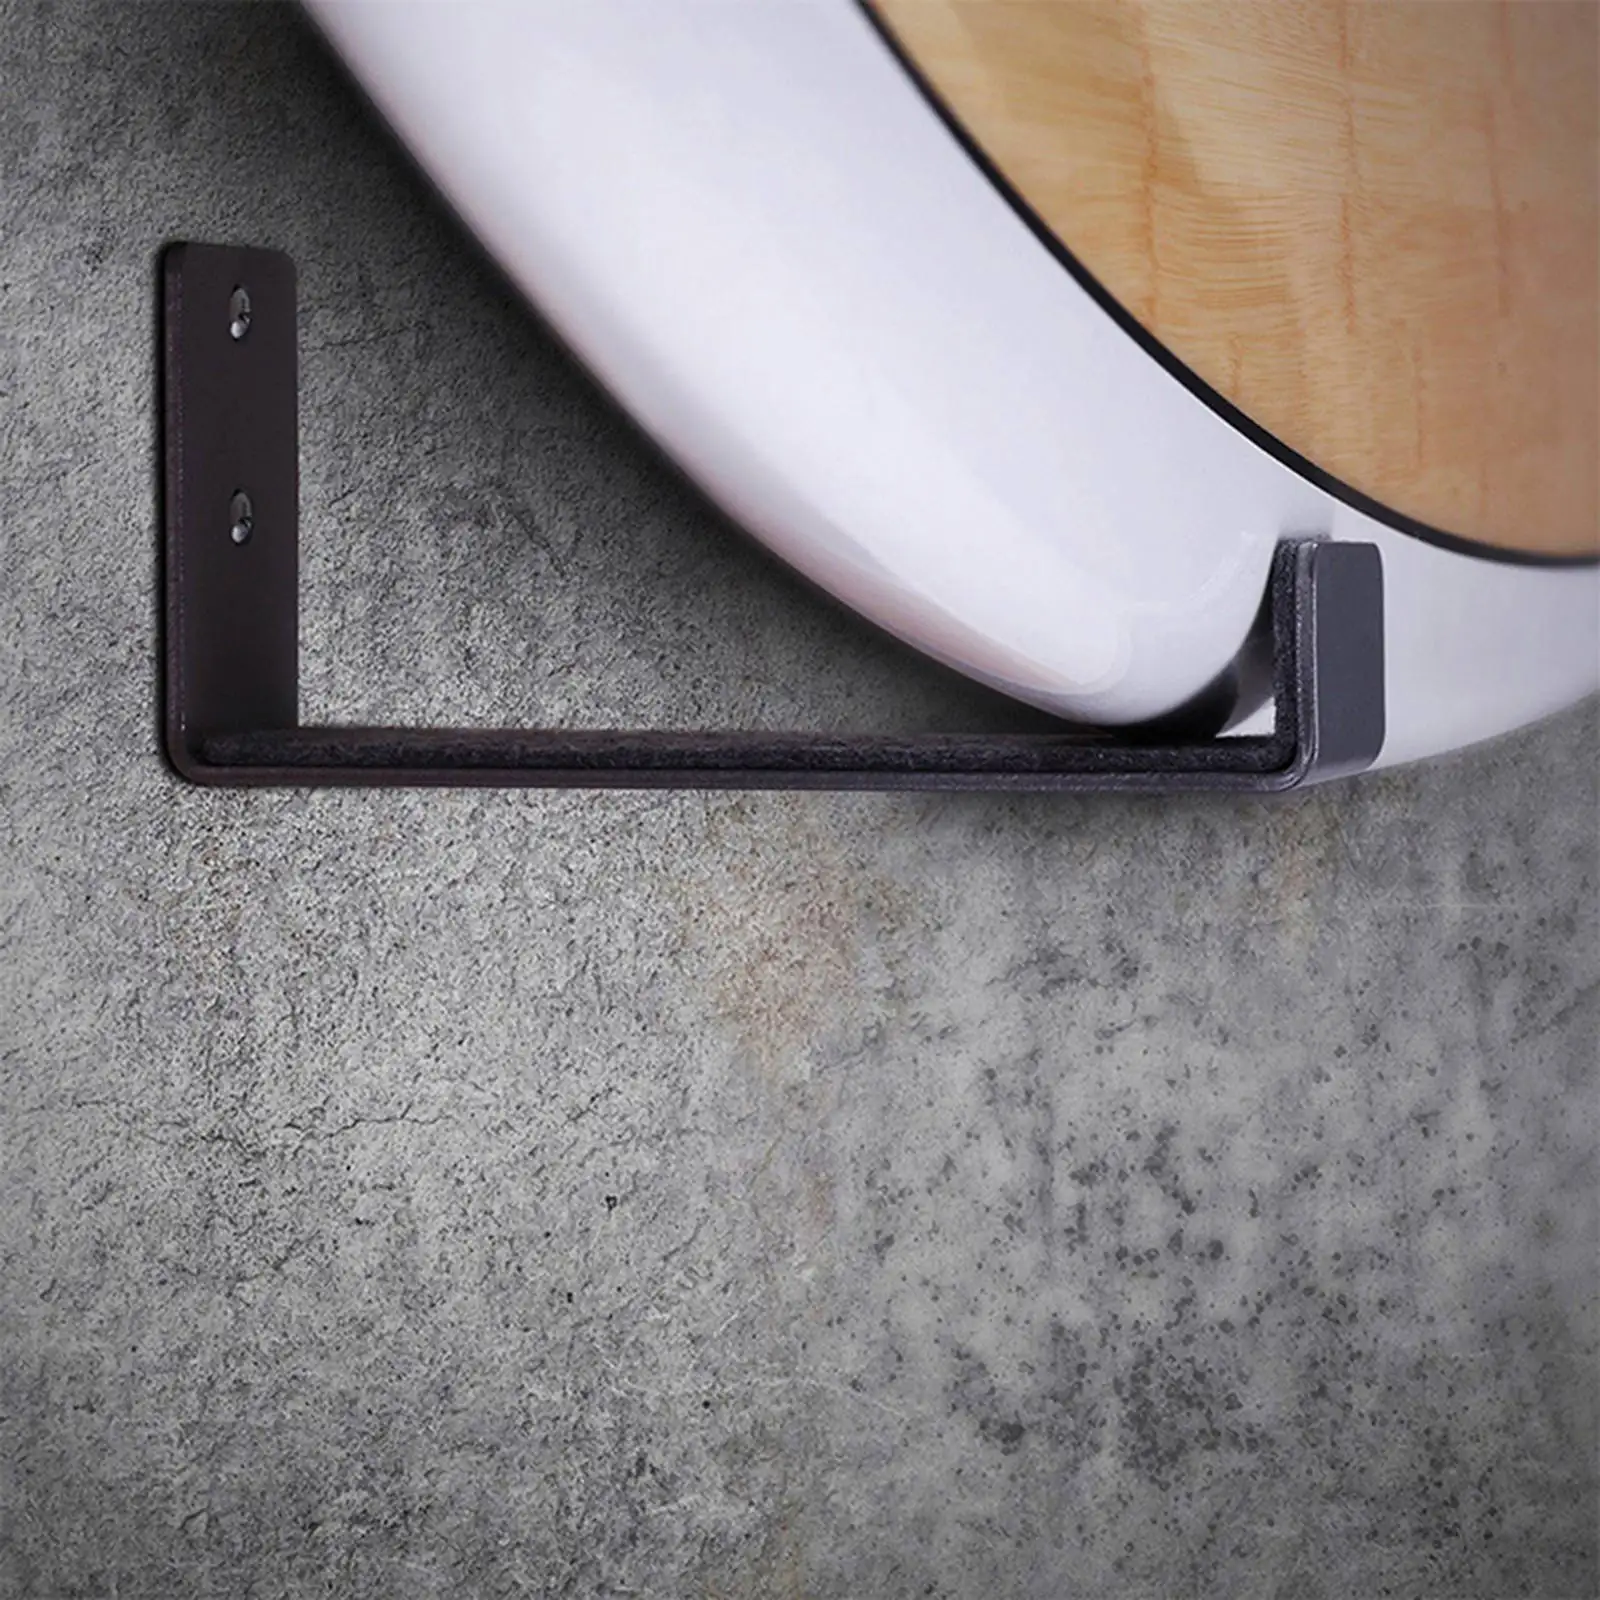 Wall Rack Surfboard Minimalist Wall-Mounted Hook Shelf Accessory Metal for Bathroom Kitchen Indoor Outdoor